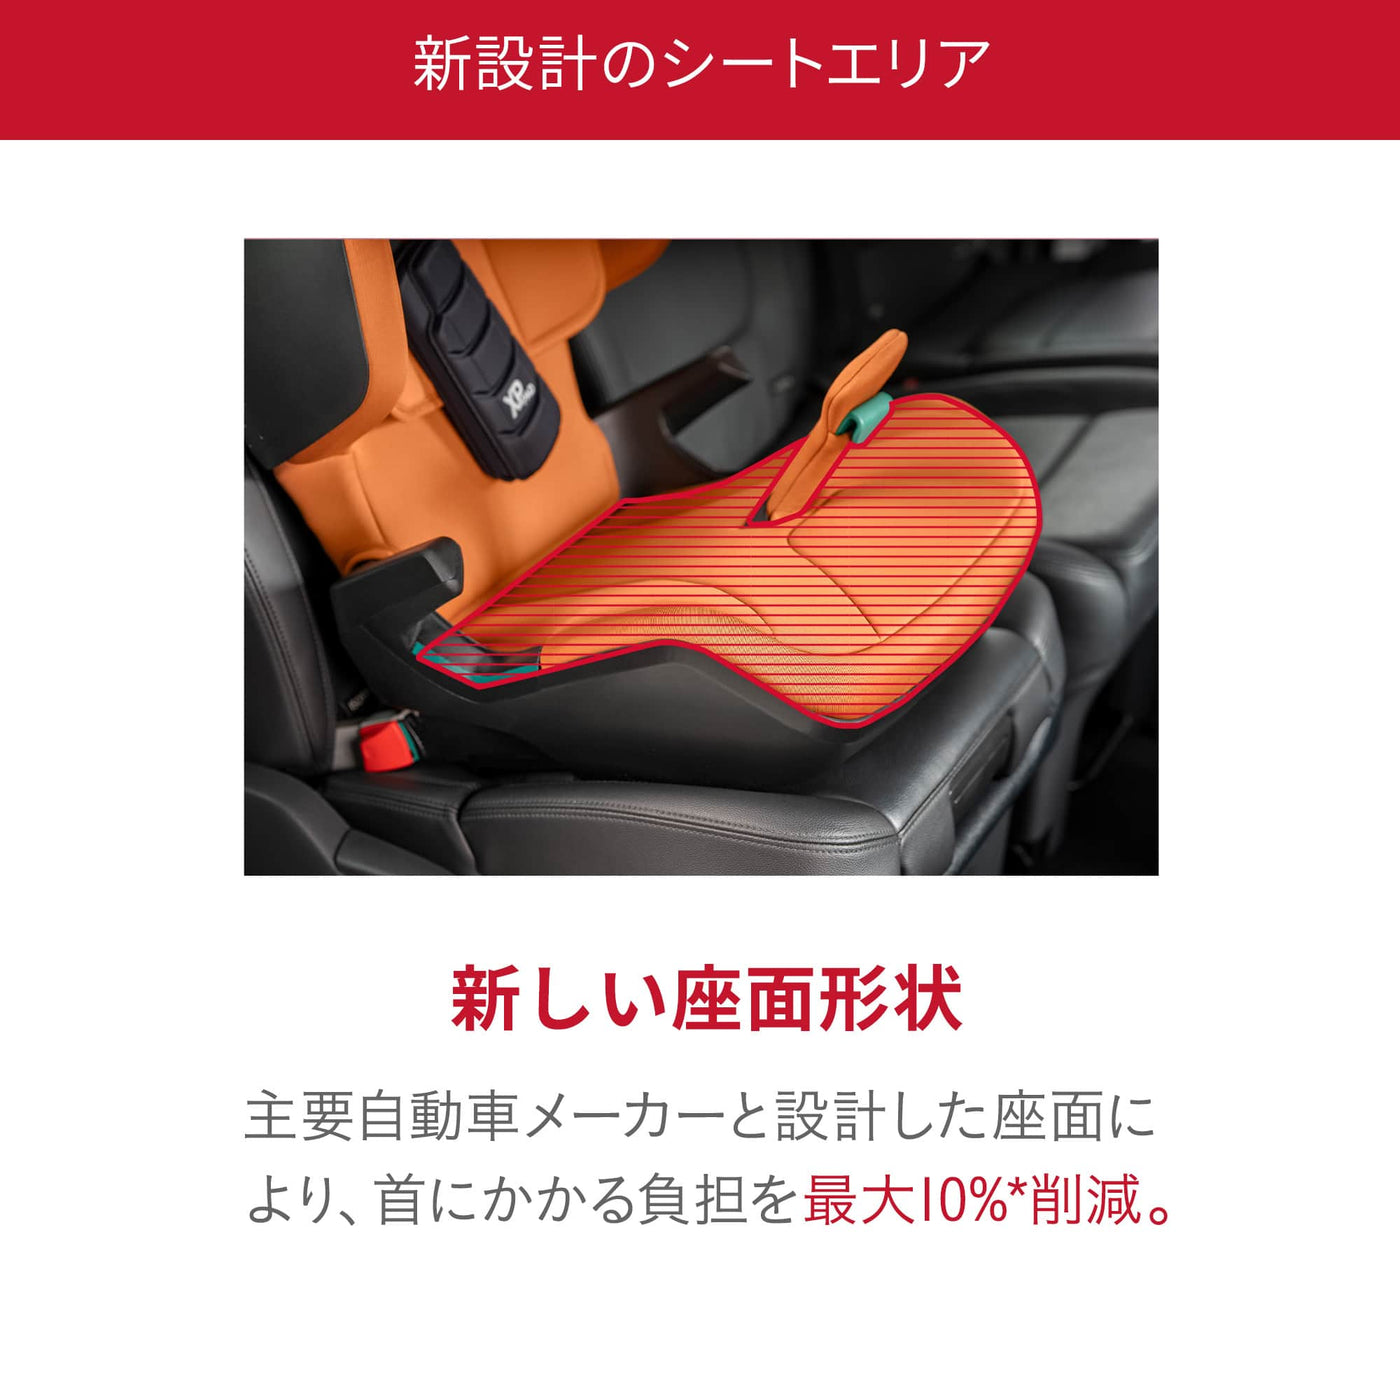 【新設計のシートエリア／新しい座面形状】主要自動車メーカーと設計した座面により、首にかかる負担を最大10%*削減。